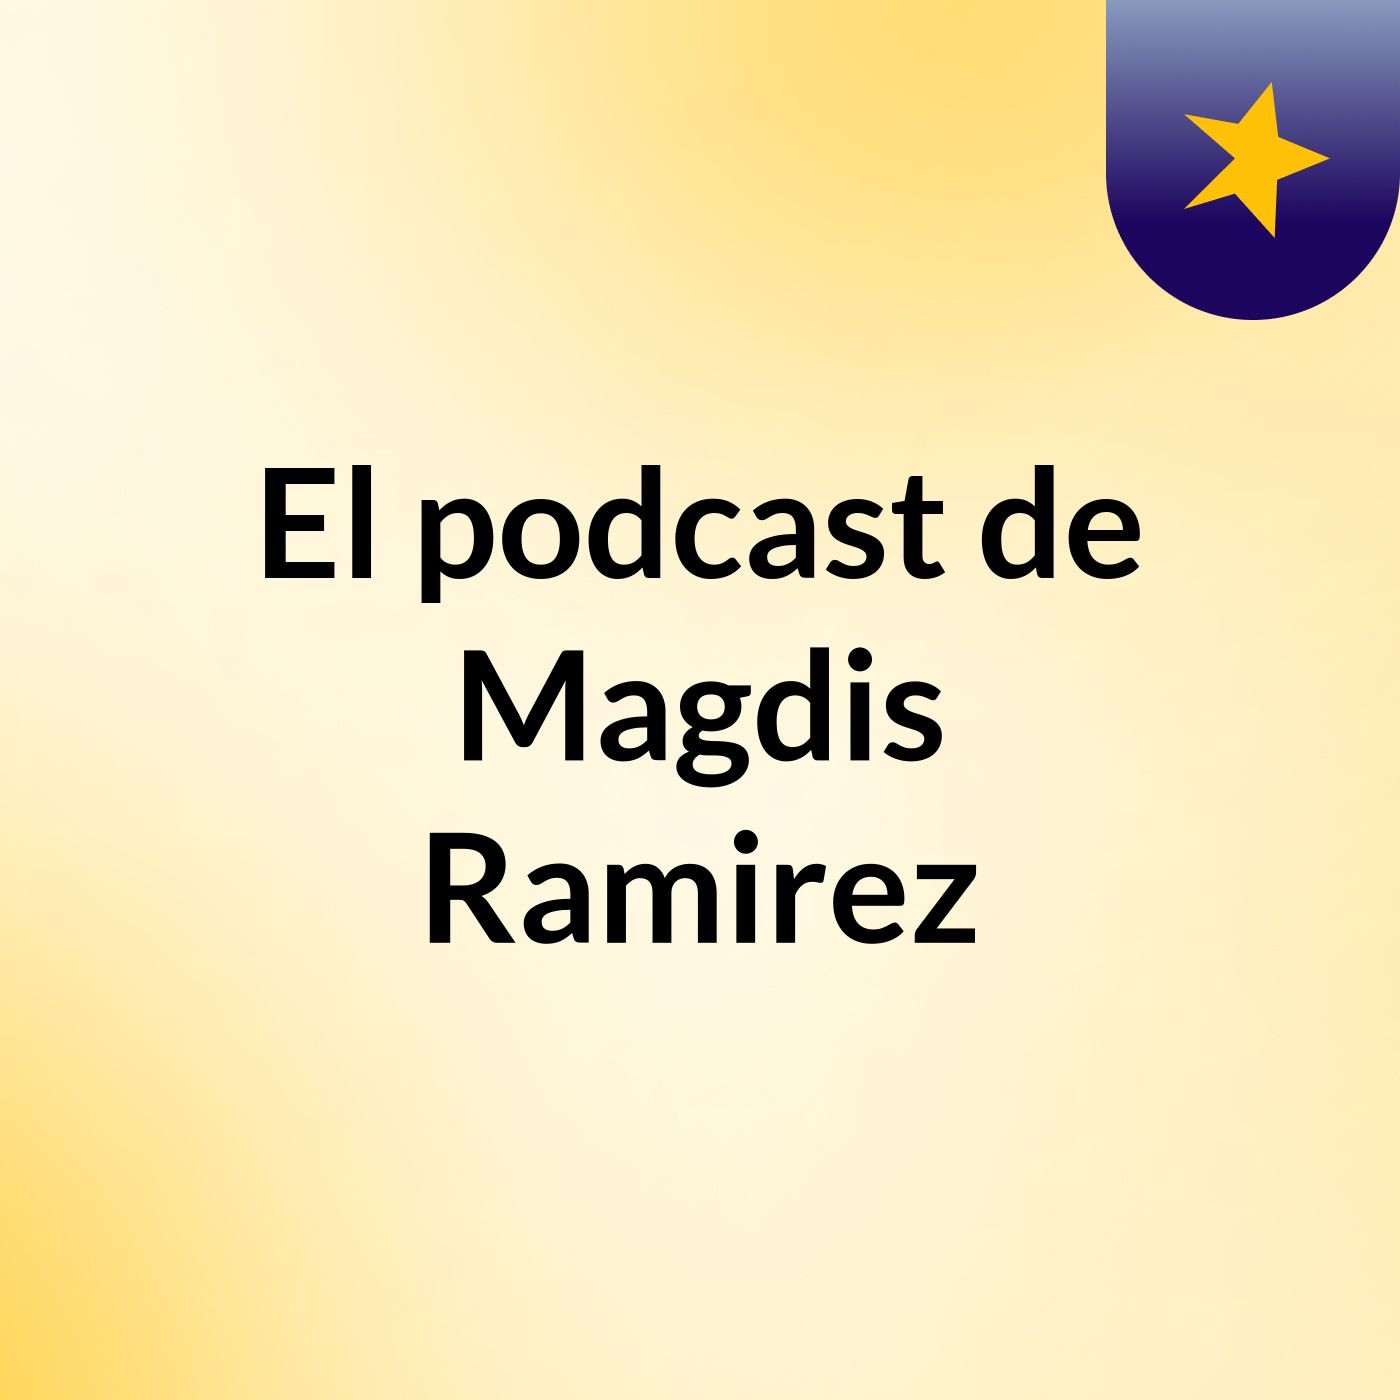 El podcast de Magdis Ramirez